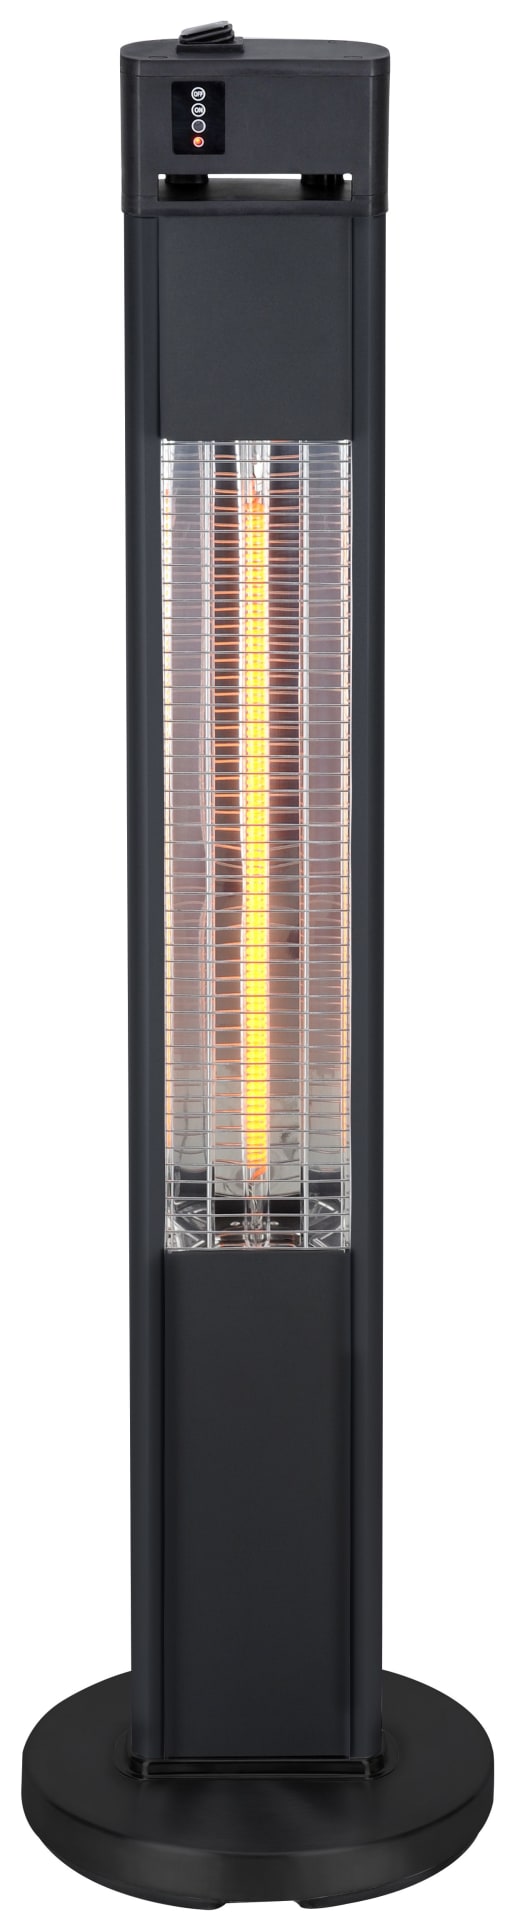 Blaze Floor Standing Electric Outdoor Heater - 1600W